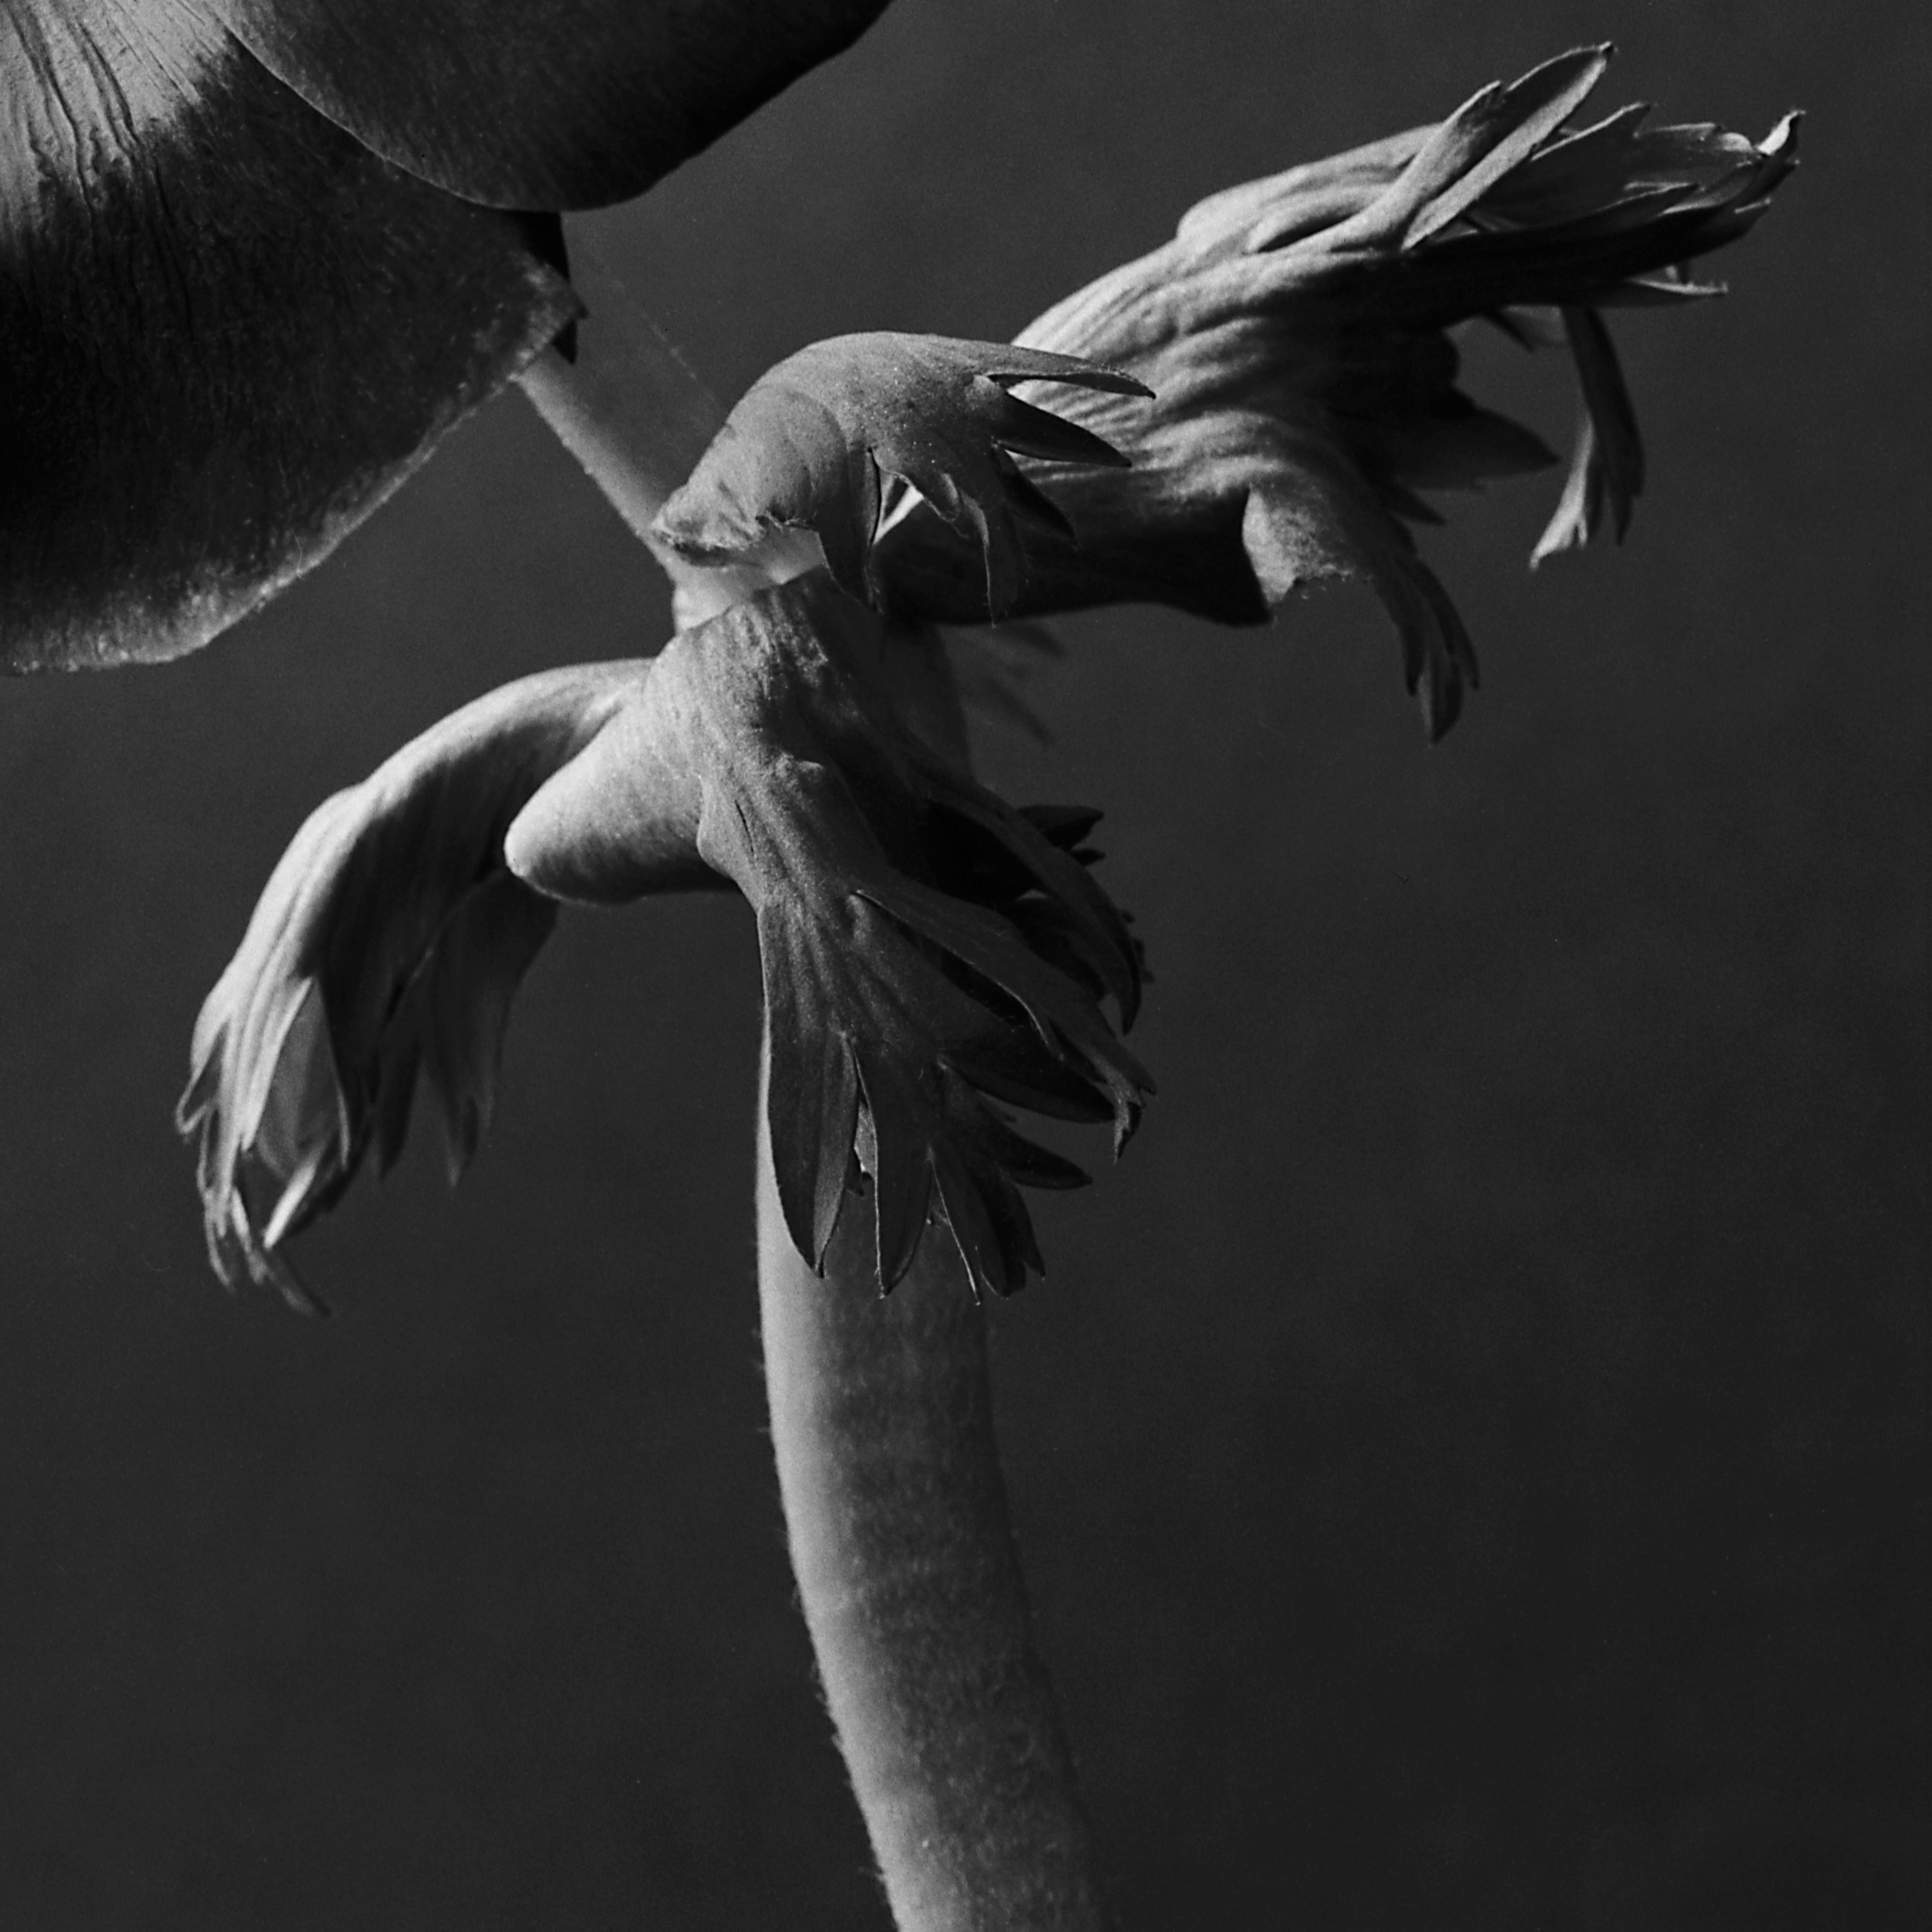  Anemone – Analogue Schwarz-Weiß-Blumenfotografie, Auflage von 20 Stück – Photograph von Ugne Pouwell